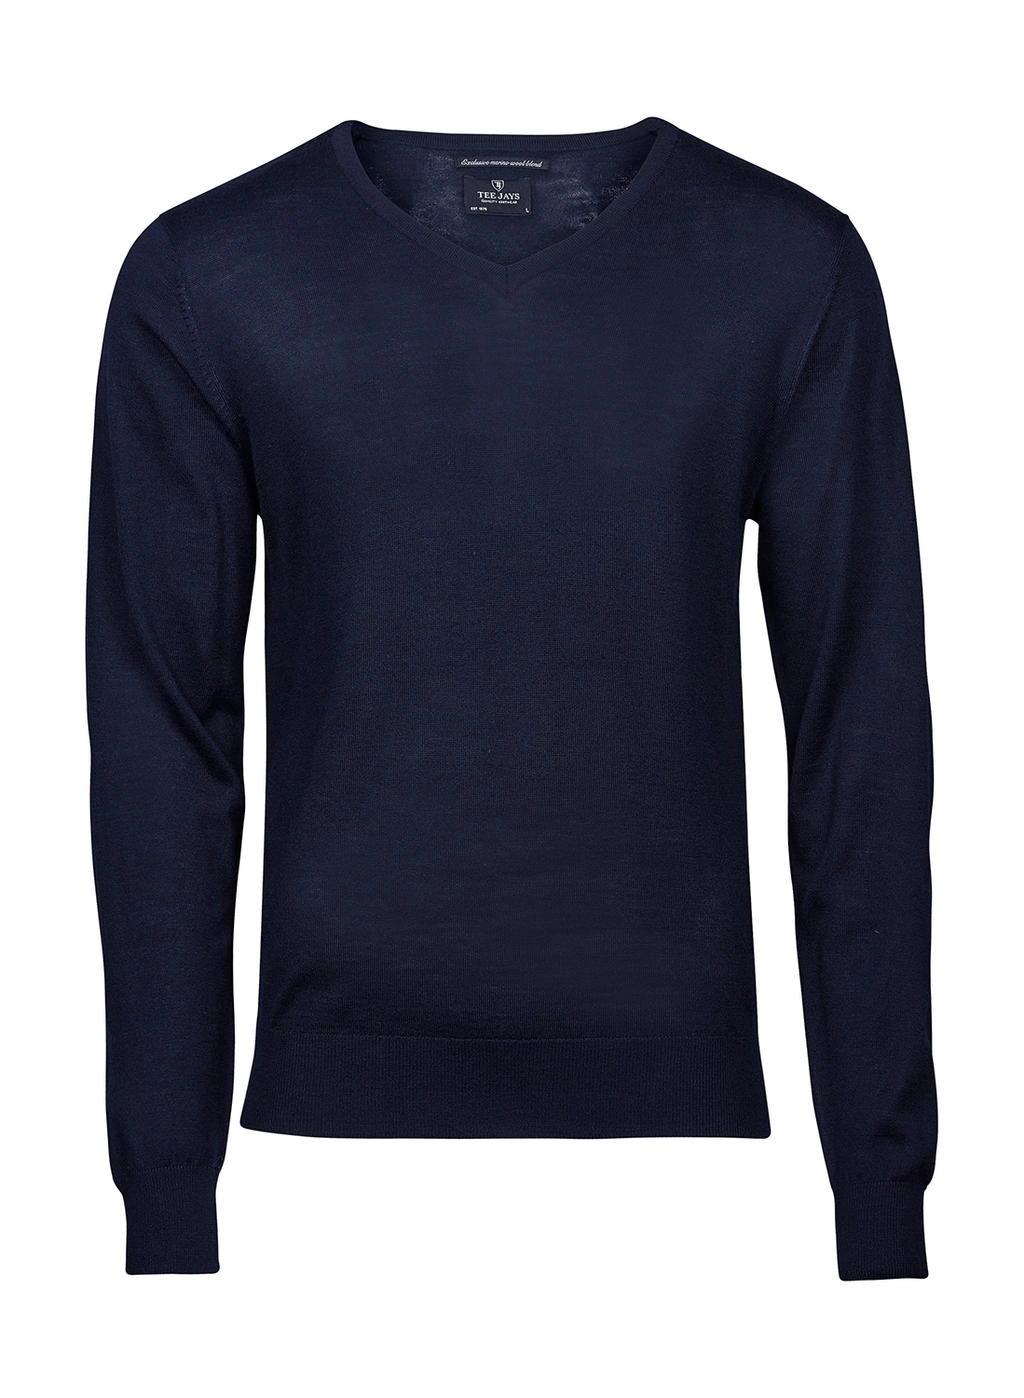 Men`s V-Neck Sweater zum Besticken und Bedrucken in der Farbe Navy mit Ihren Logo, Schriftzug oder Motiv.